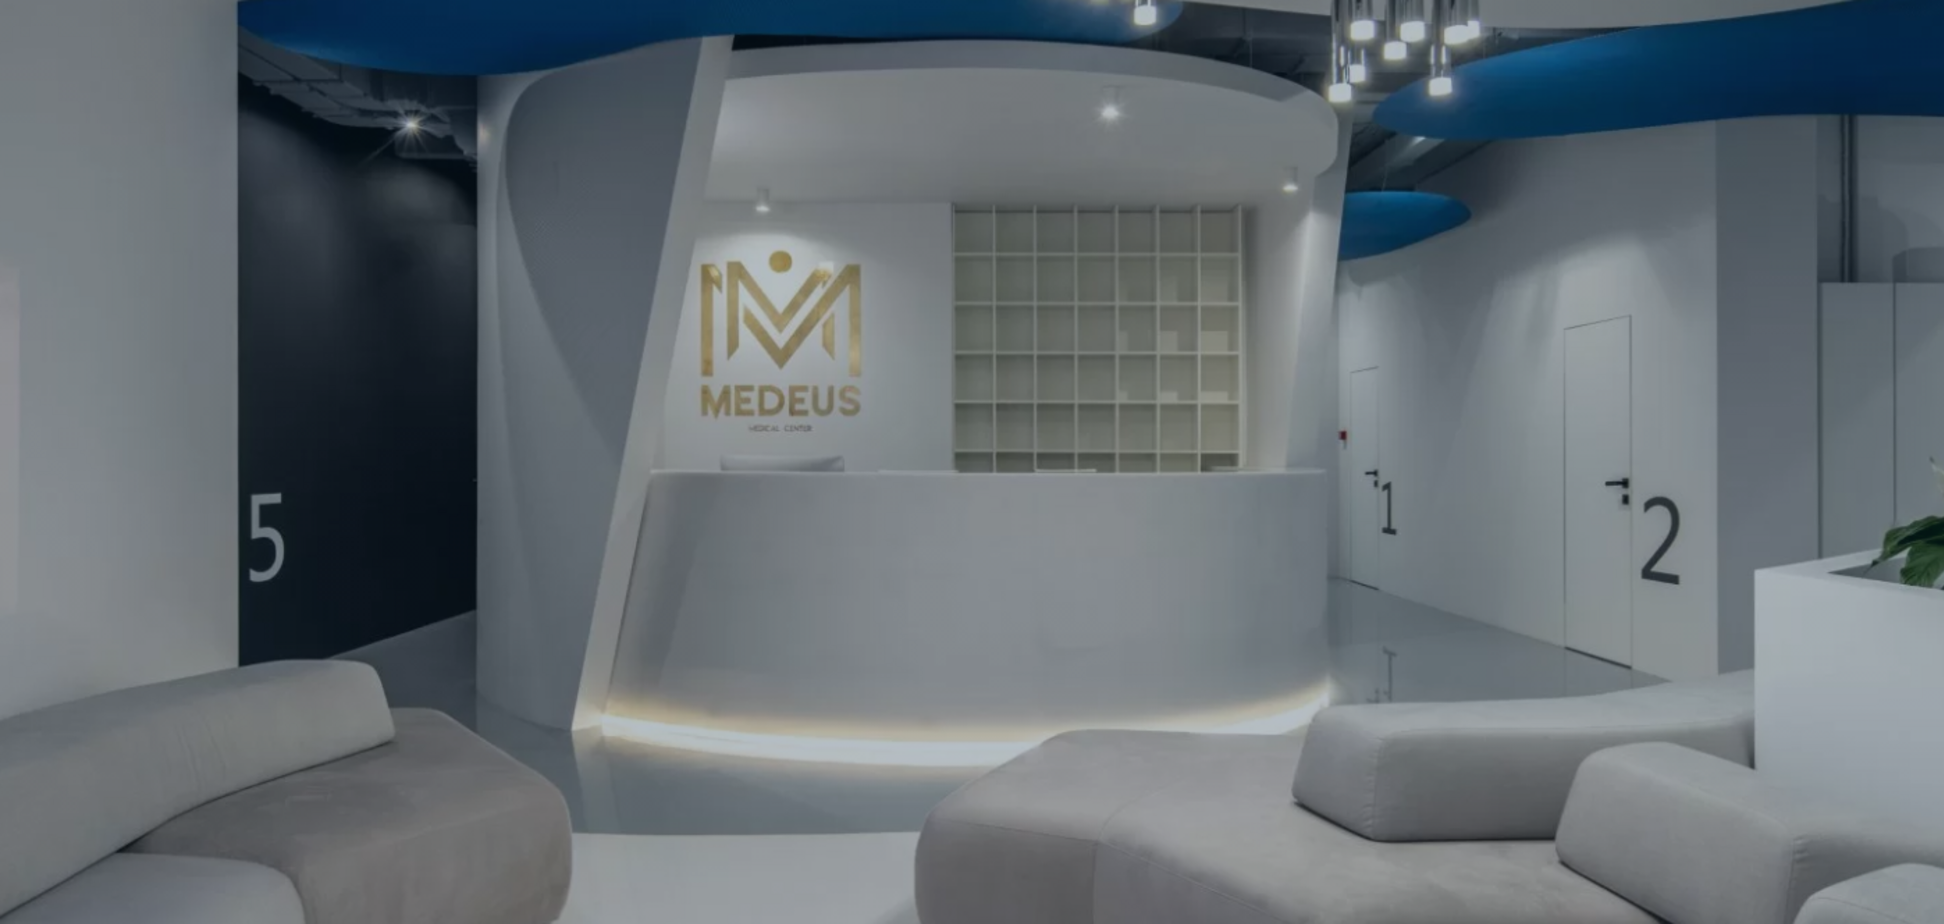 Medeus Medical Center – стоит ли доверять новейшей диагностике